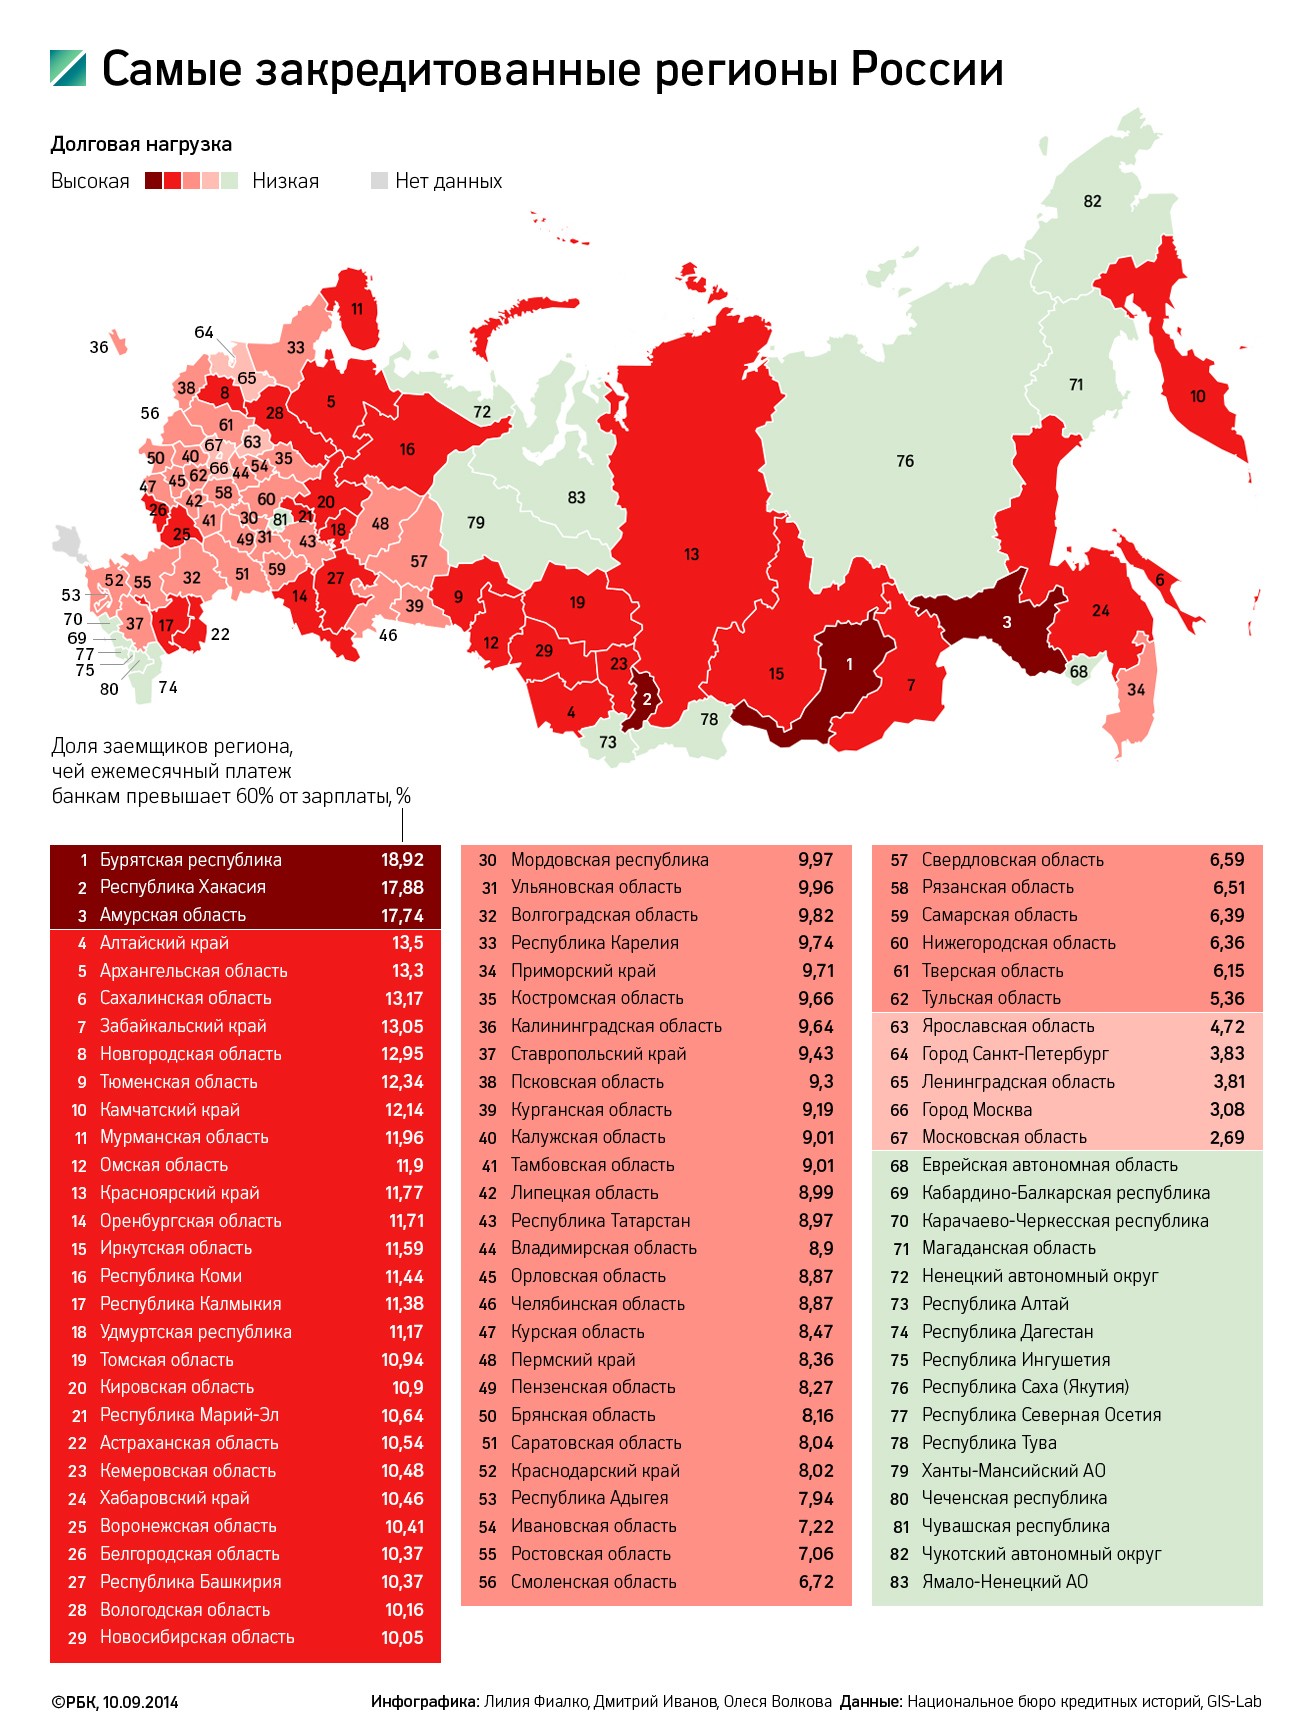 Кредитная карта России: где живут самые закредитованные заемщики